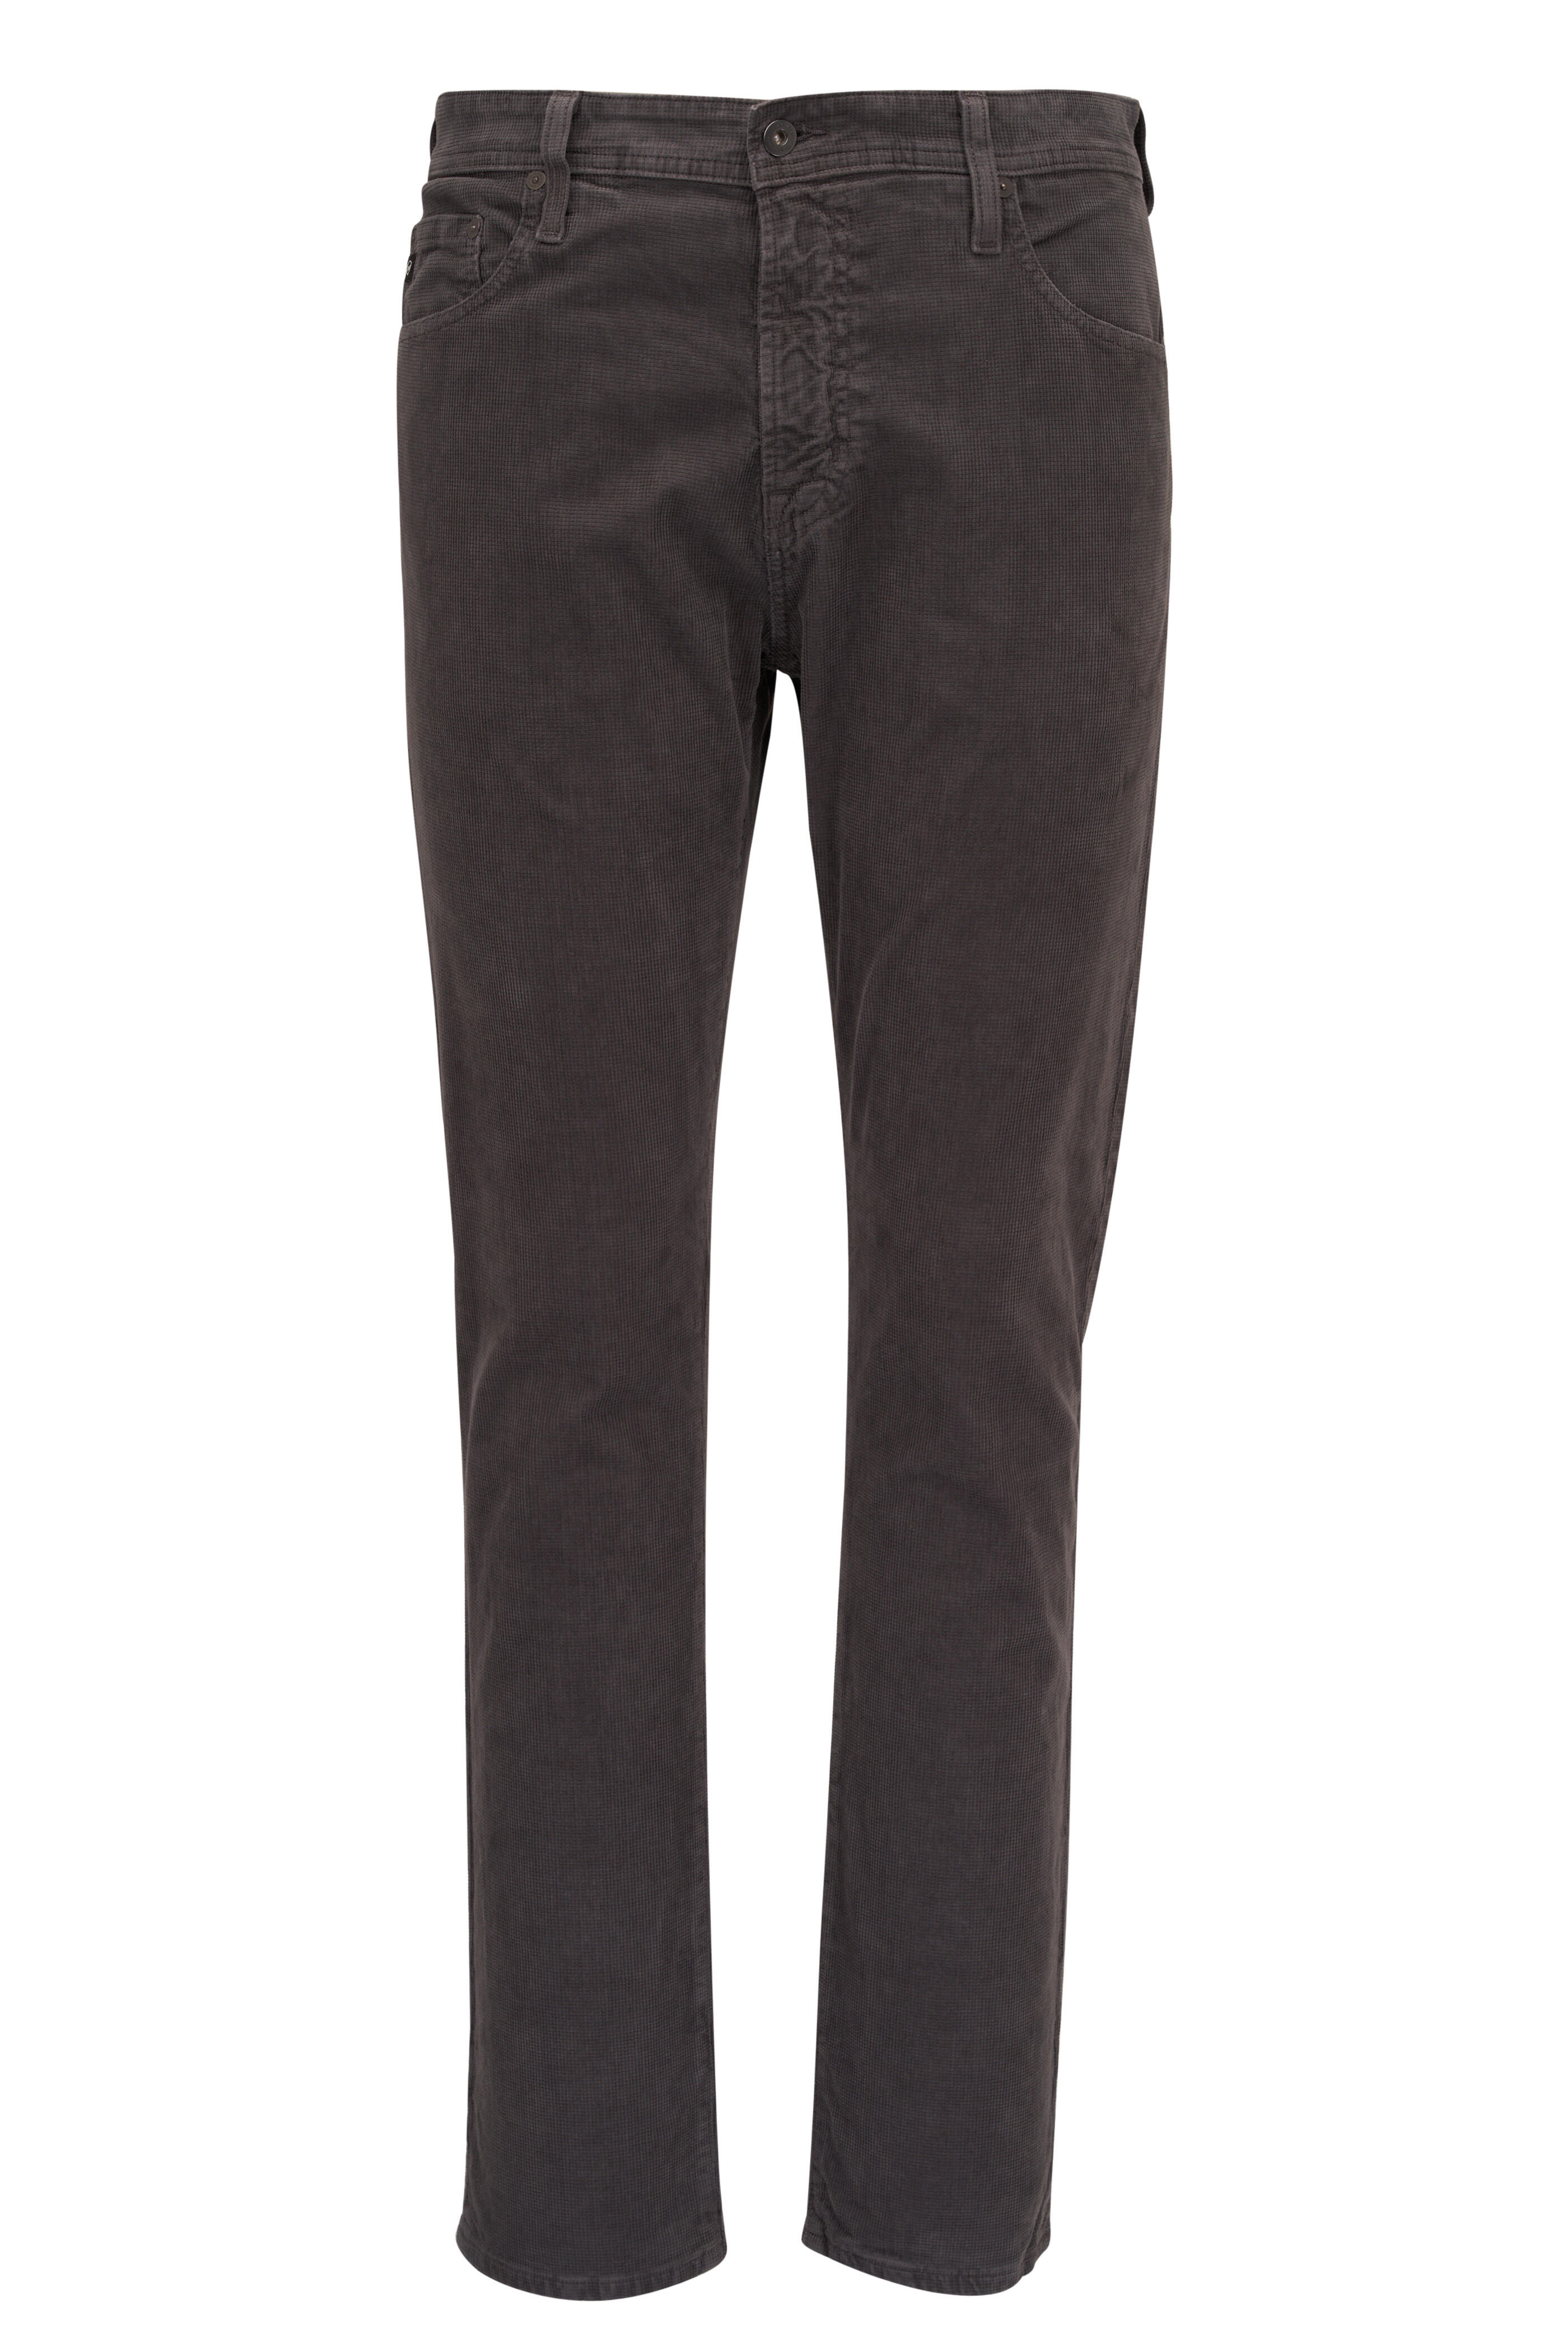 AG - Tellis Gray Corduroy Modern Slim Jean | Mitchell Stores